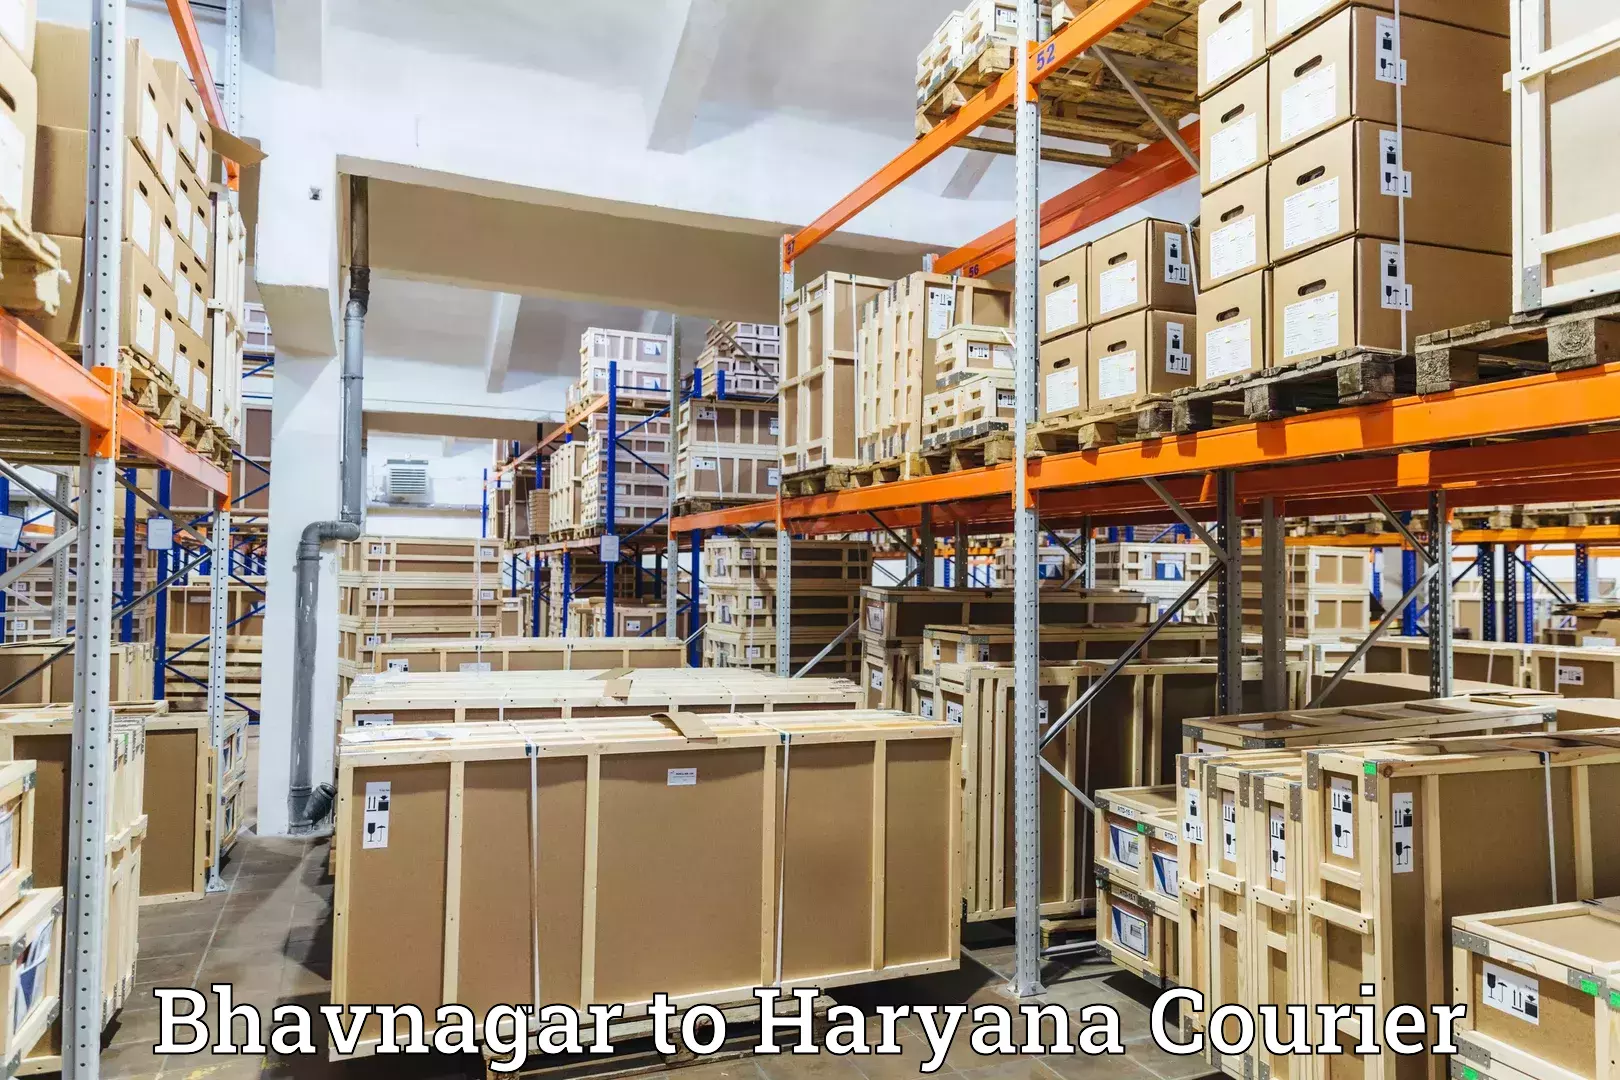 Delivery service partnership Bhavnagar to Karnal